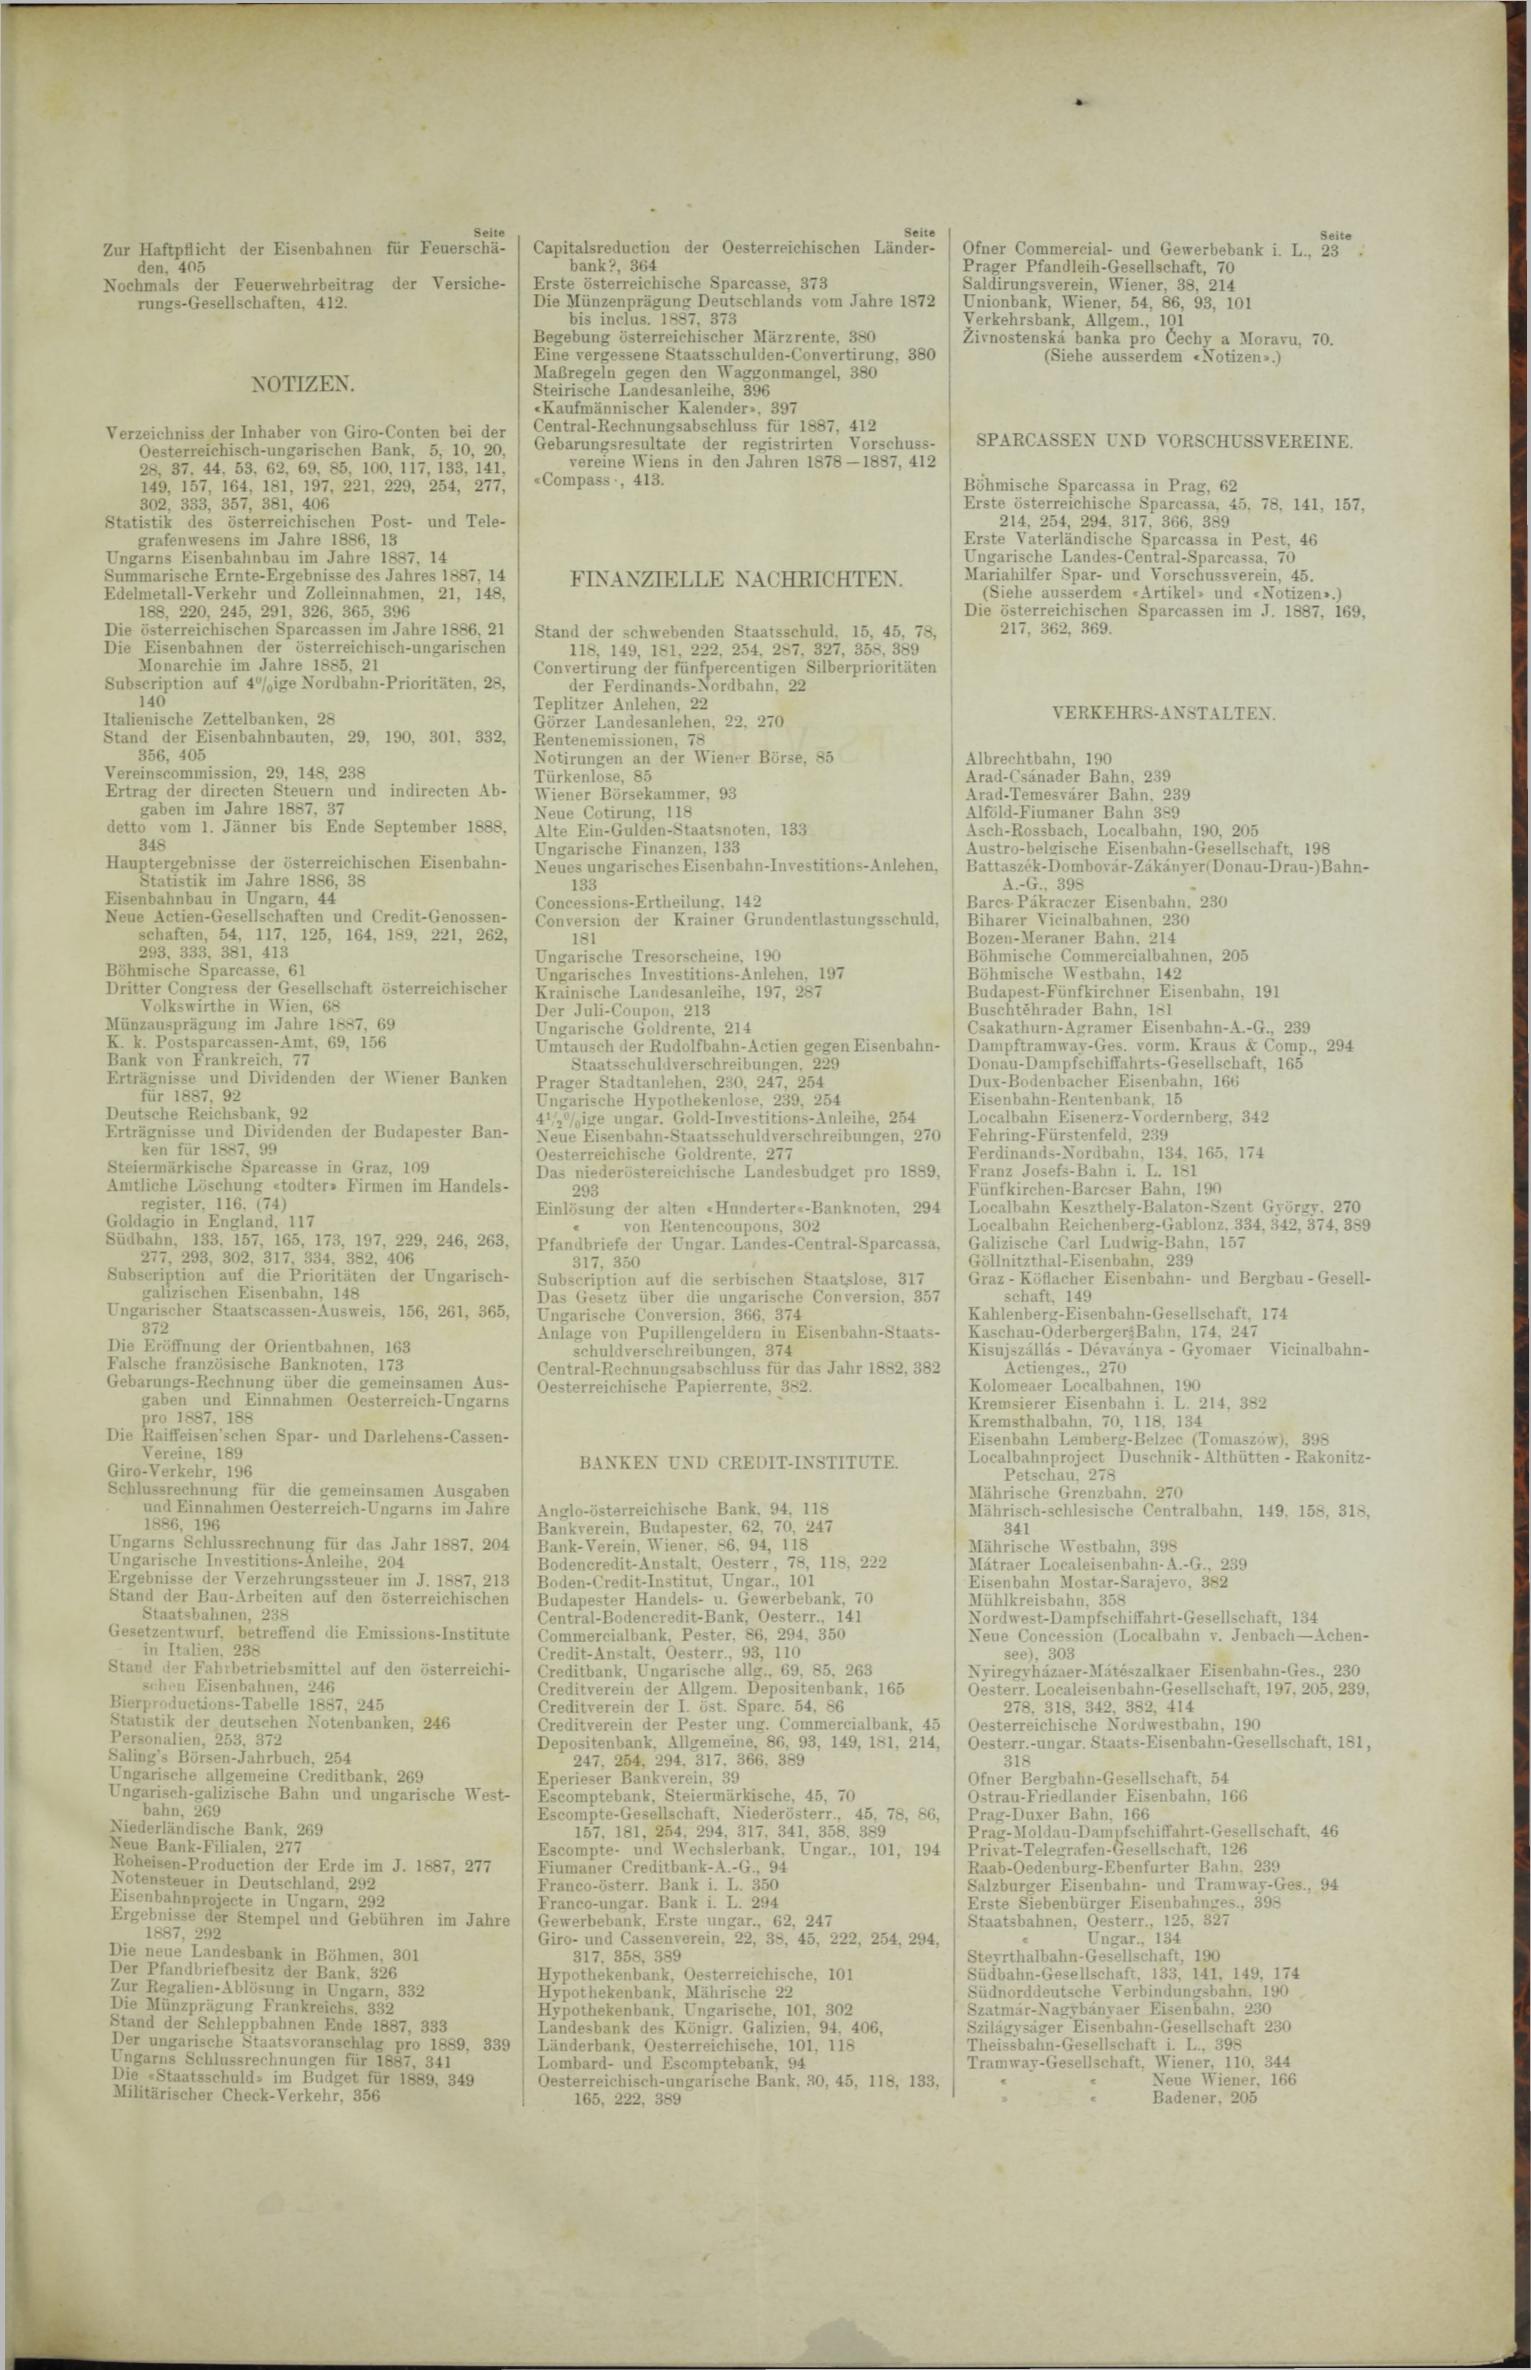 Der Tresor 29.03.1888 - Seite 11